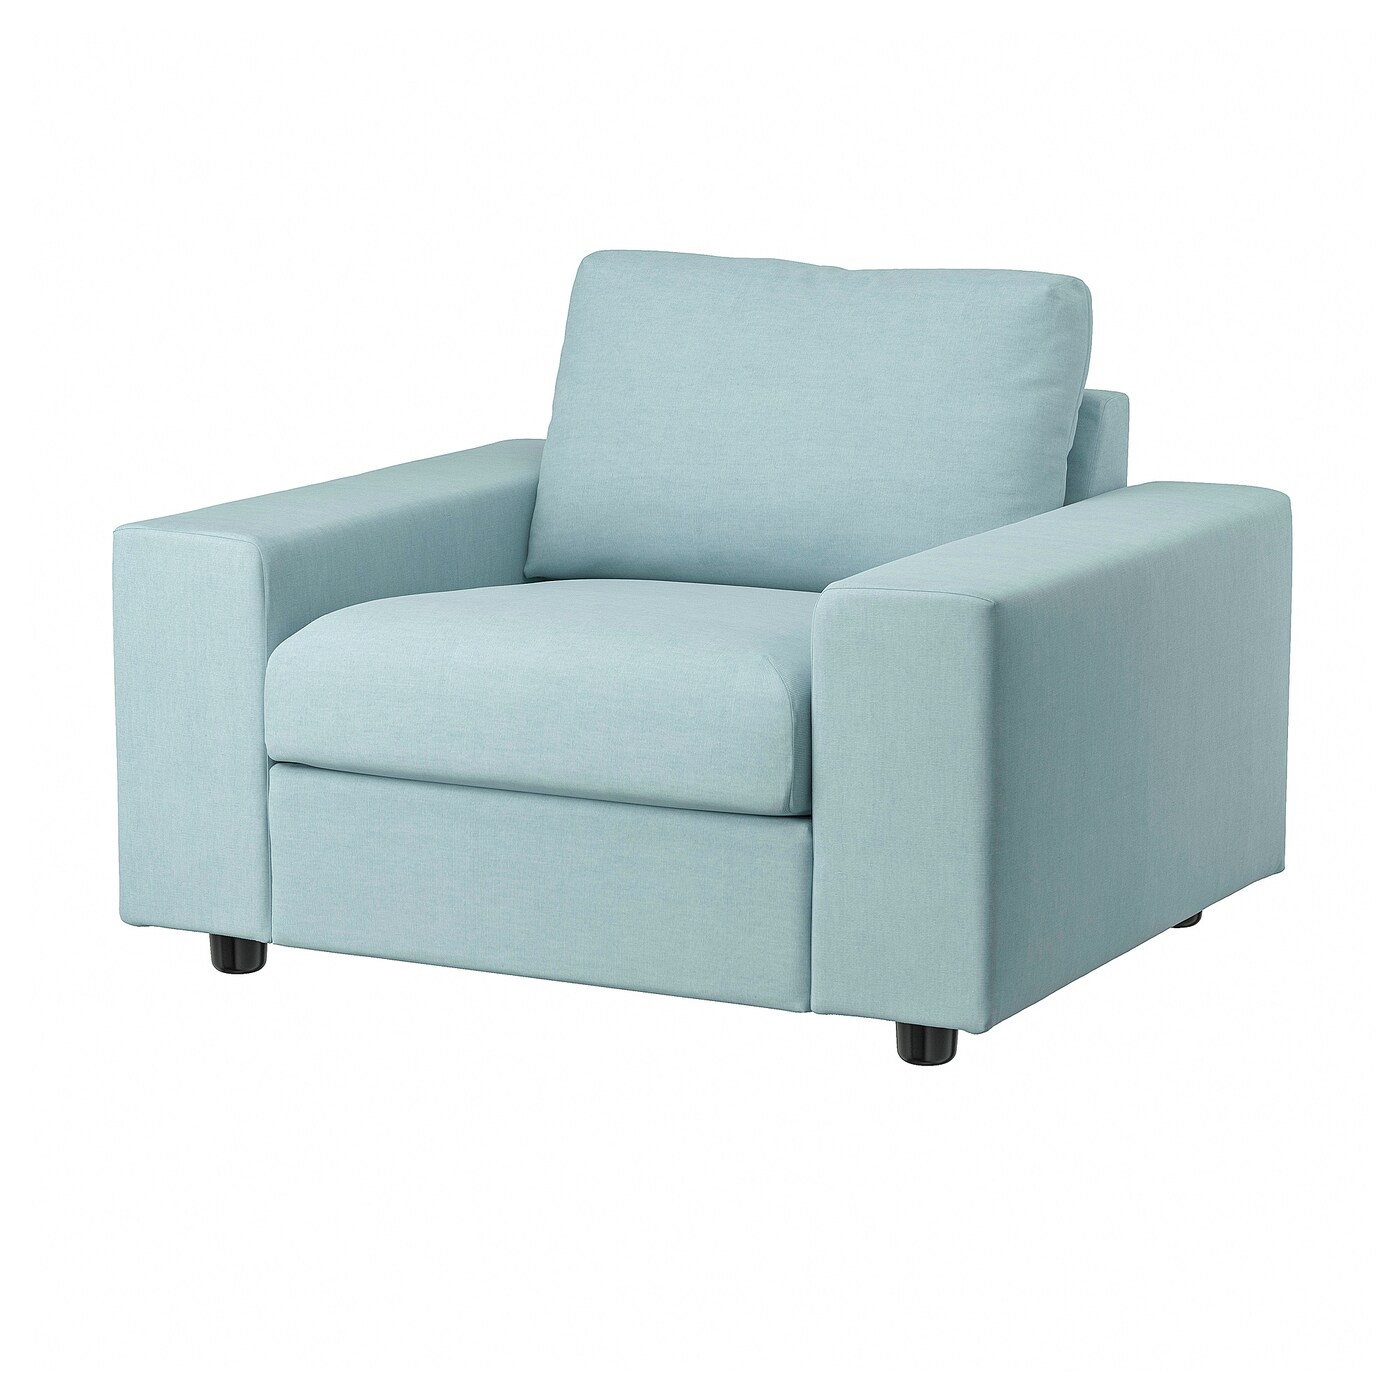 Кресло - IKEA VIMLE, 115х98х83 см, голубой, ВИМЛЕ ИКЕА